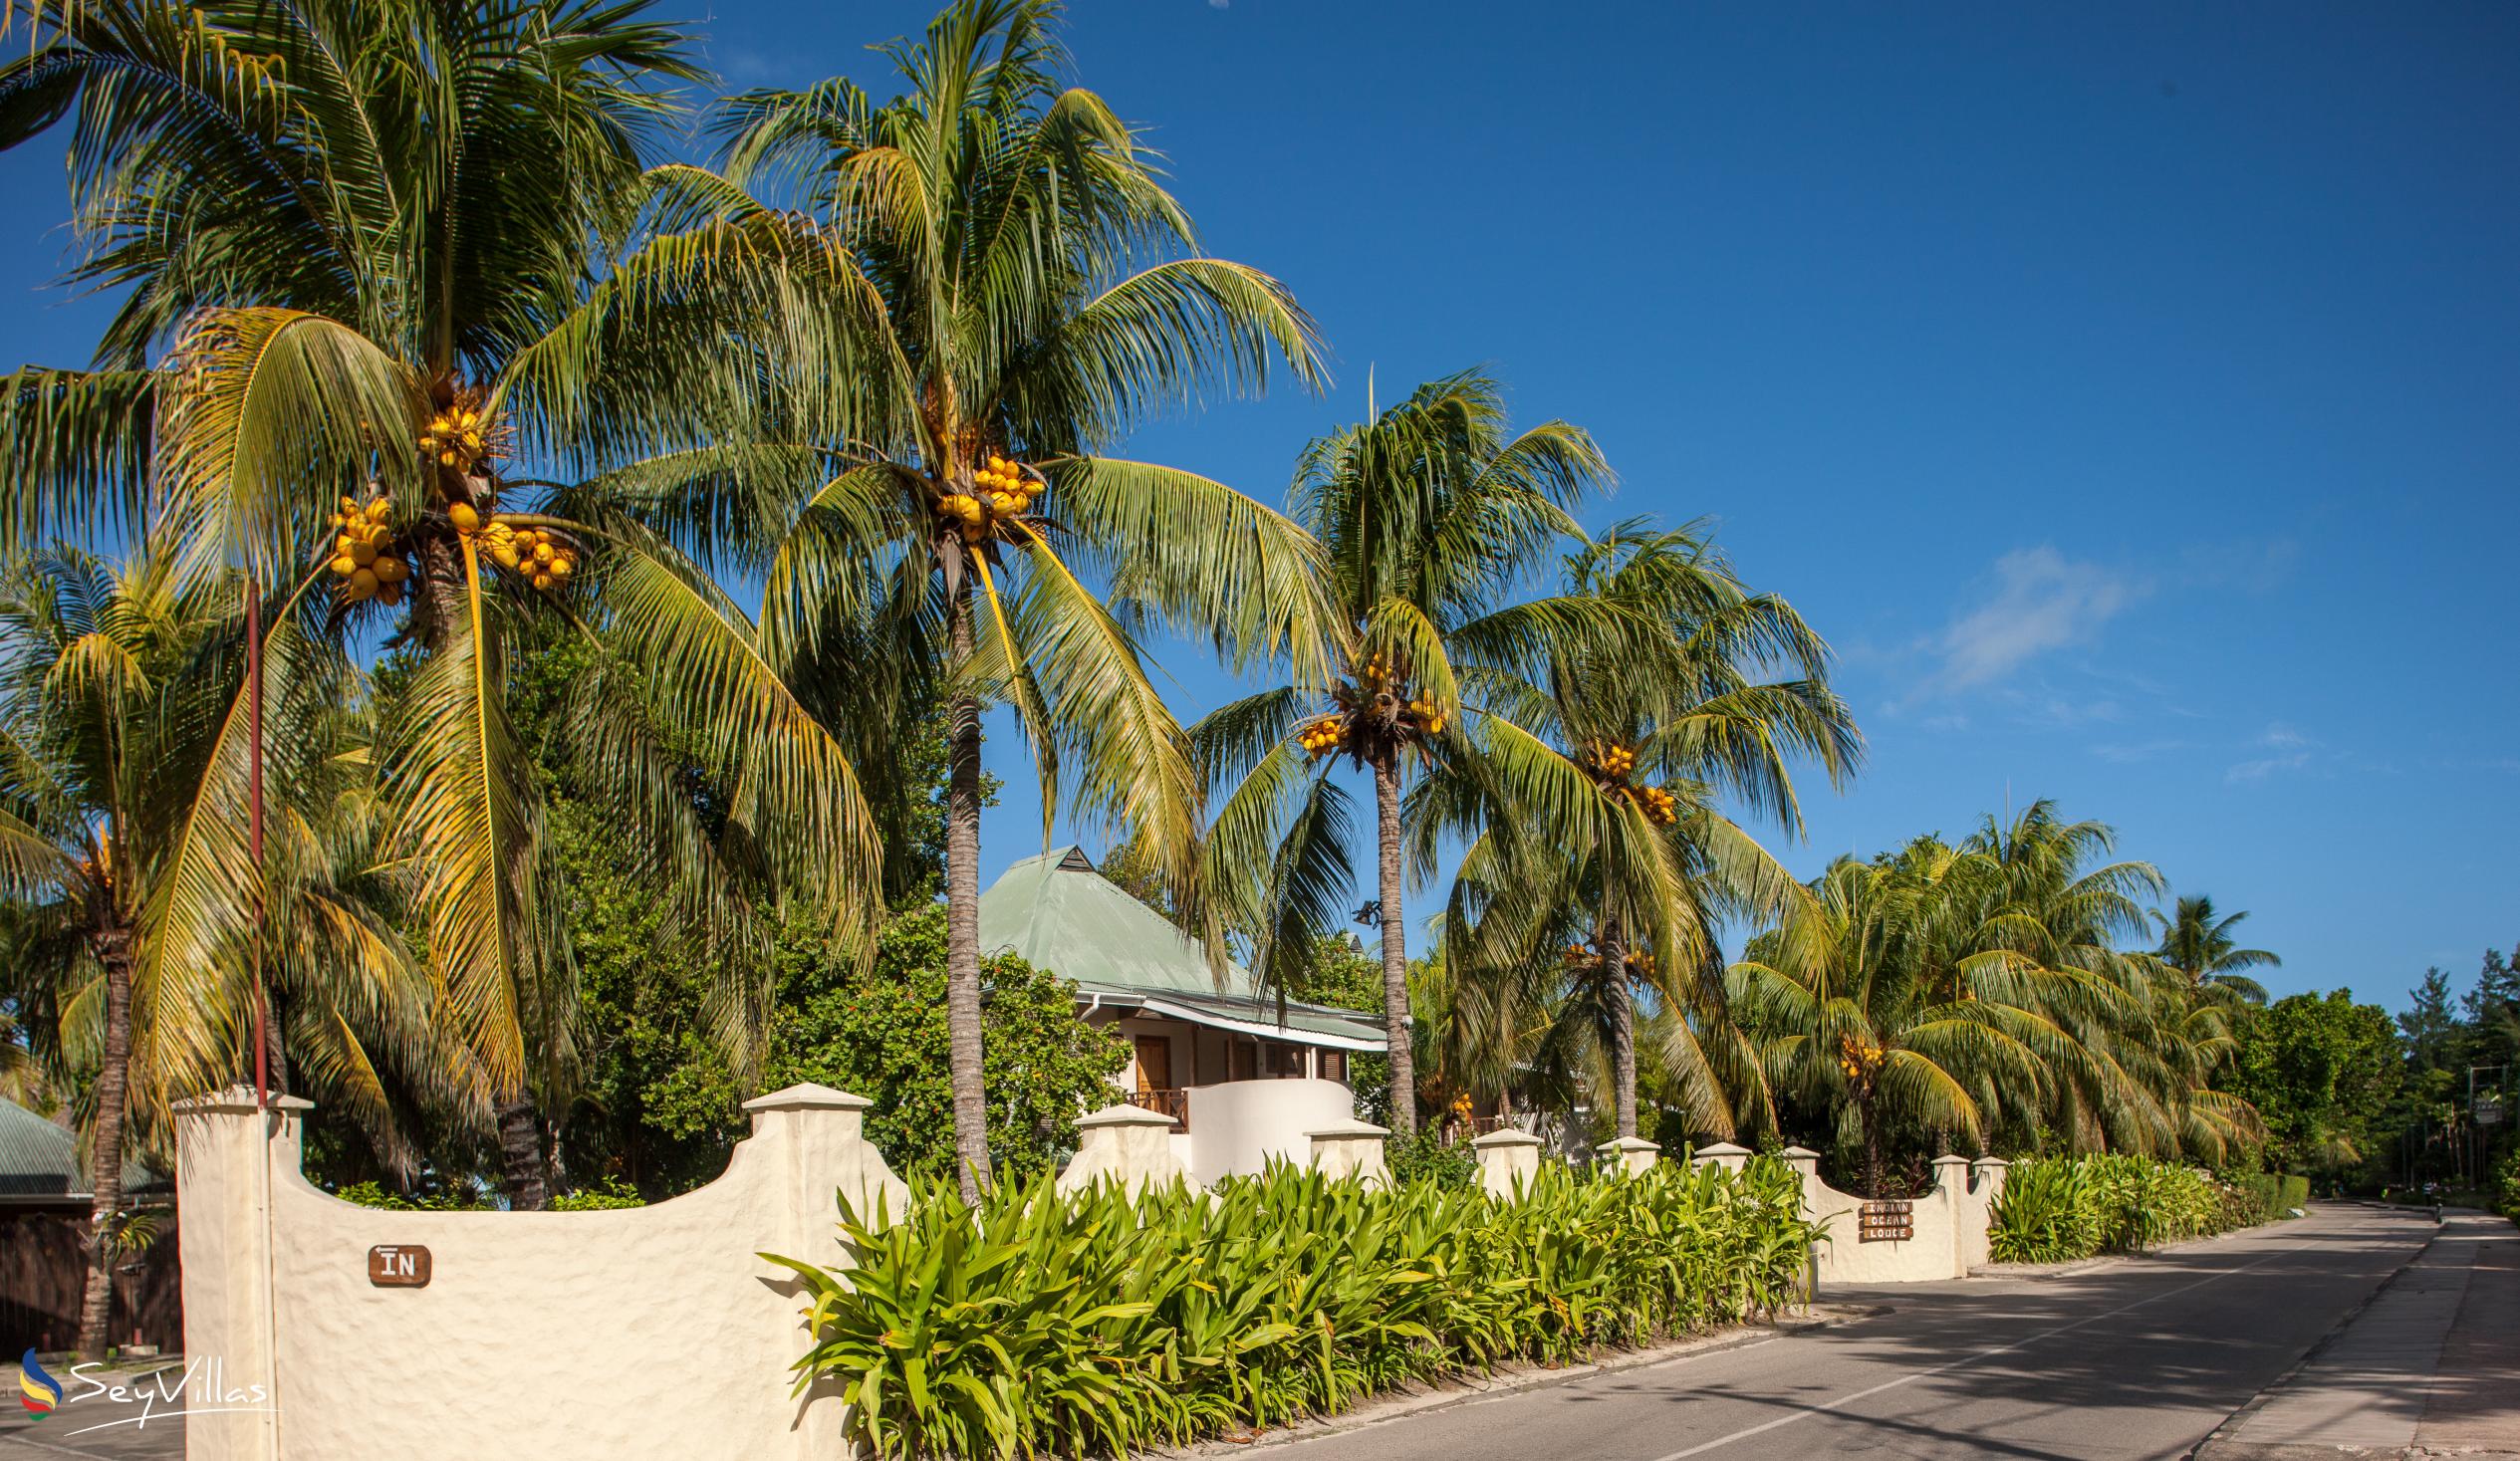 Foto 17: Indian Ocean Lodge - Aussenbereich - Praslin (Seychellen)